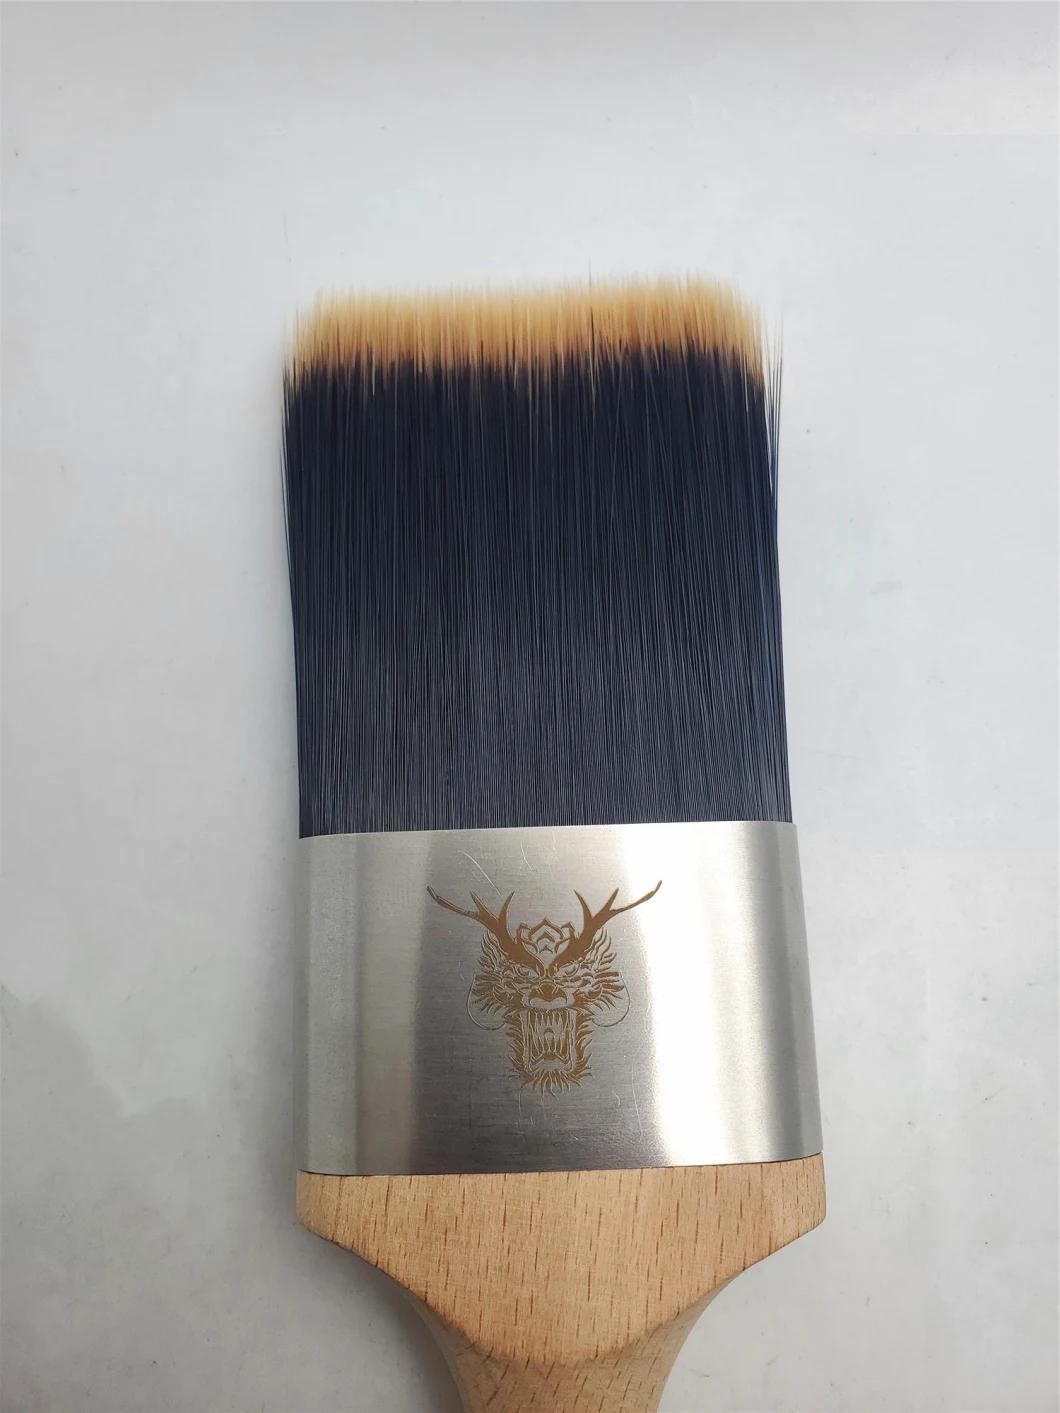 Tubes Paint Brushes, Wallpaper Brush, Premium Wall Paint Brush